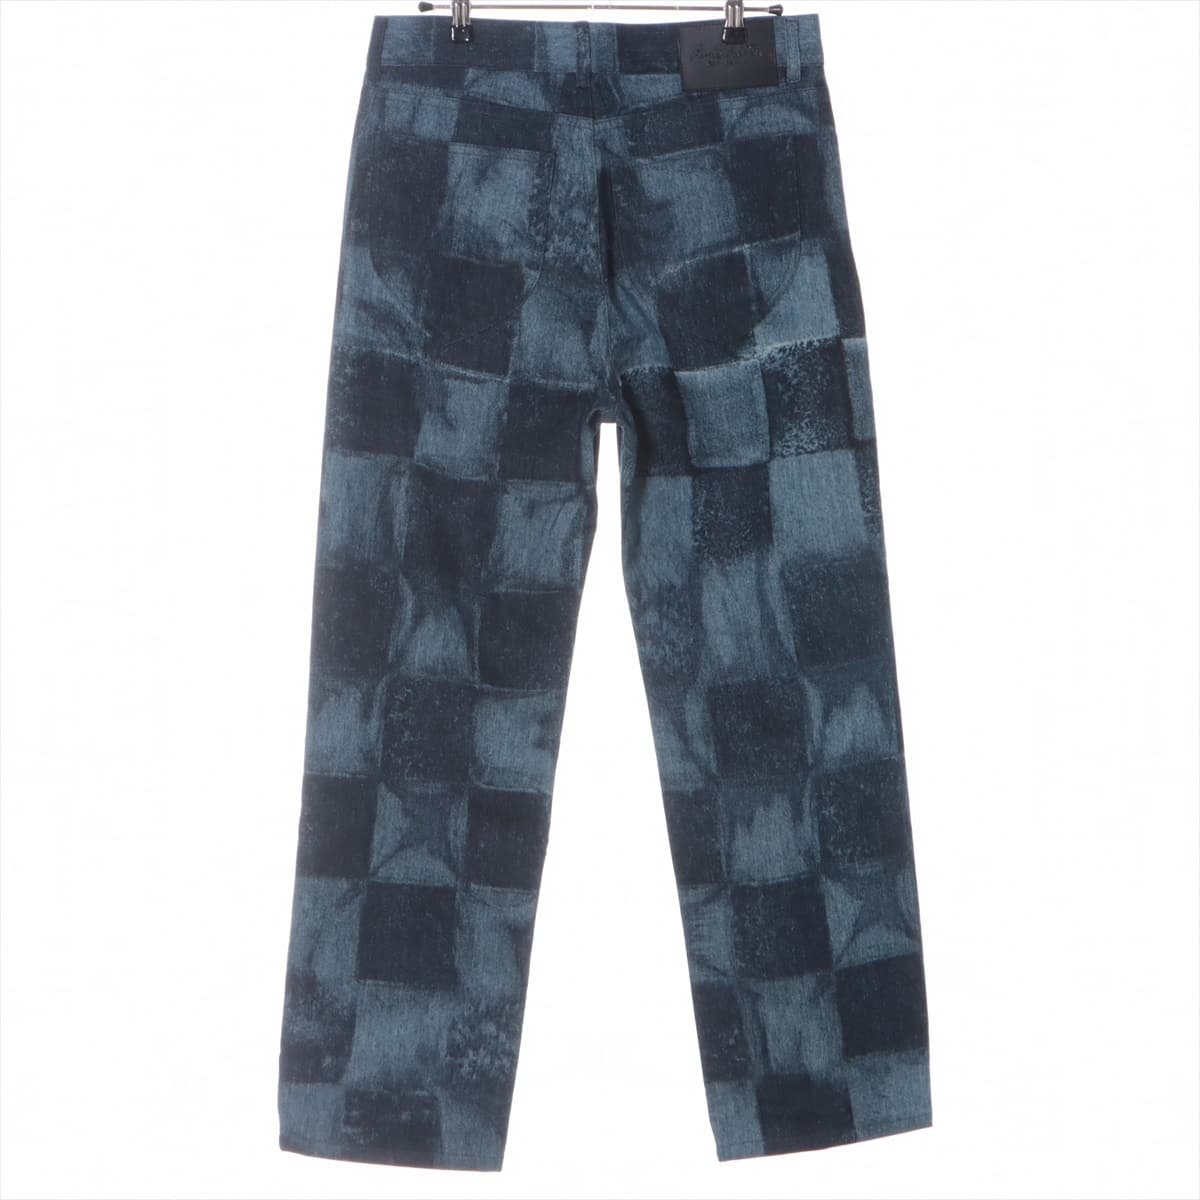 Louis Vuitton 21AW Cotton Denim pants 29 Men's Blue indigo  RM212M  Virgil Abloh